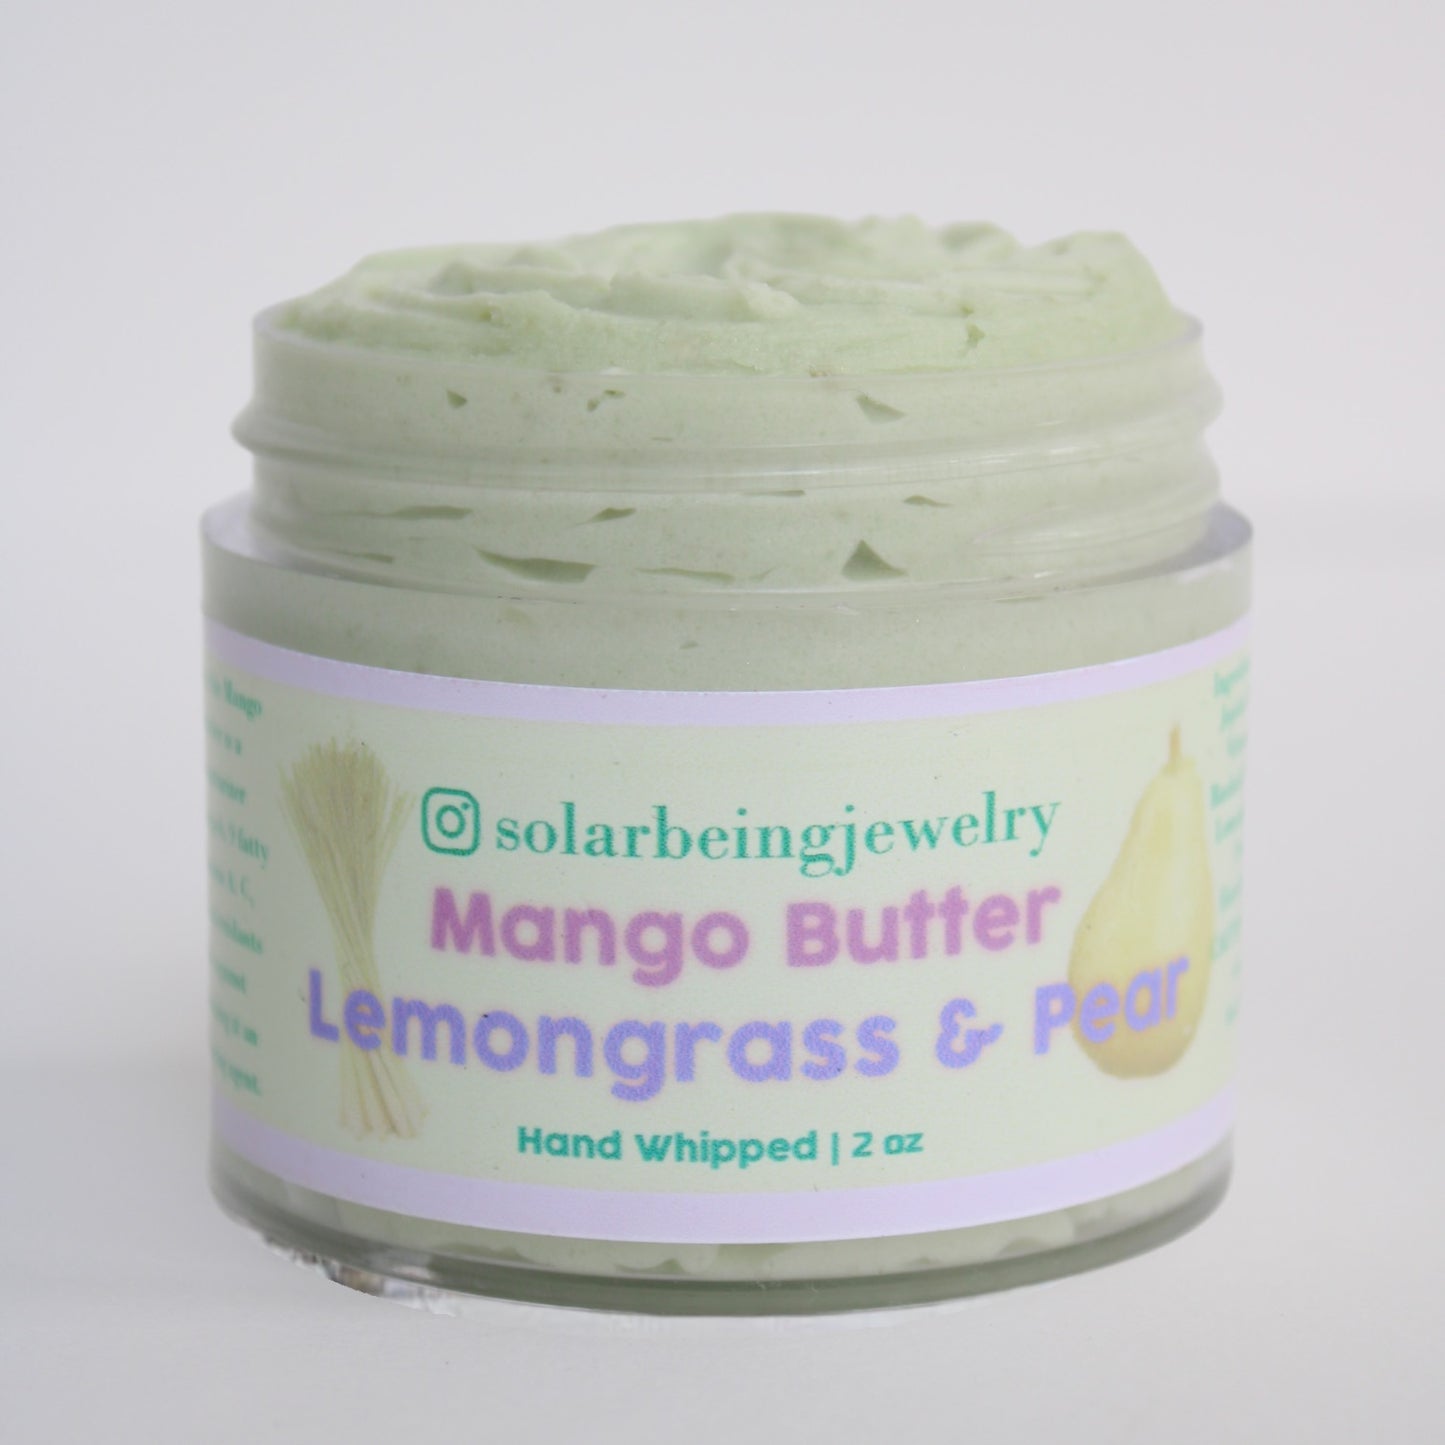 Lemongrass & Pear Scented Mango Butter